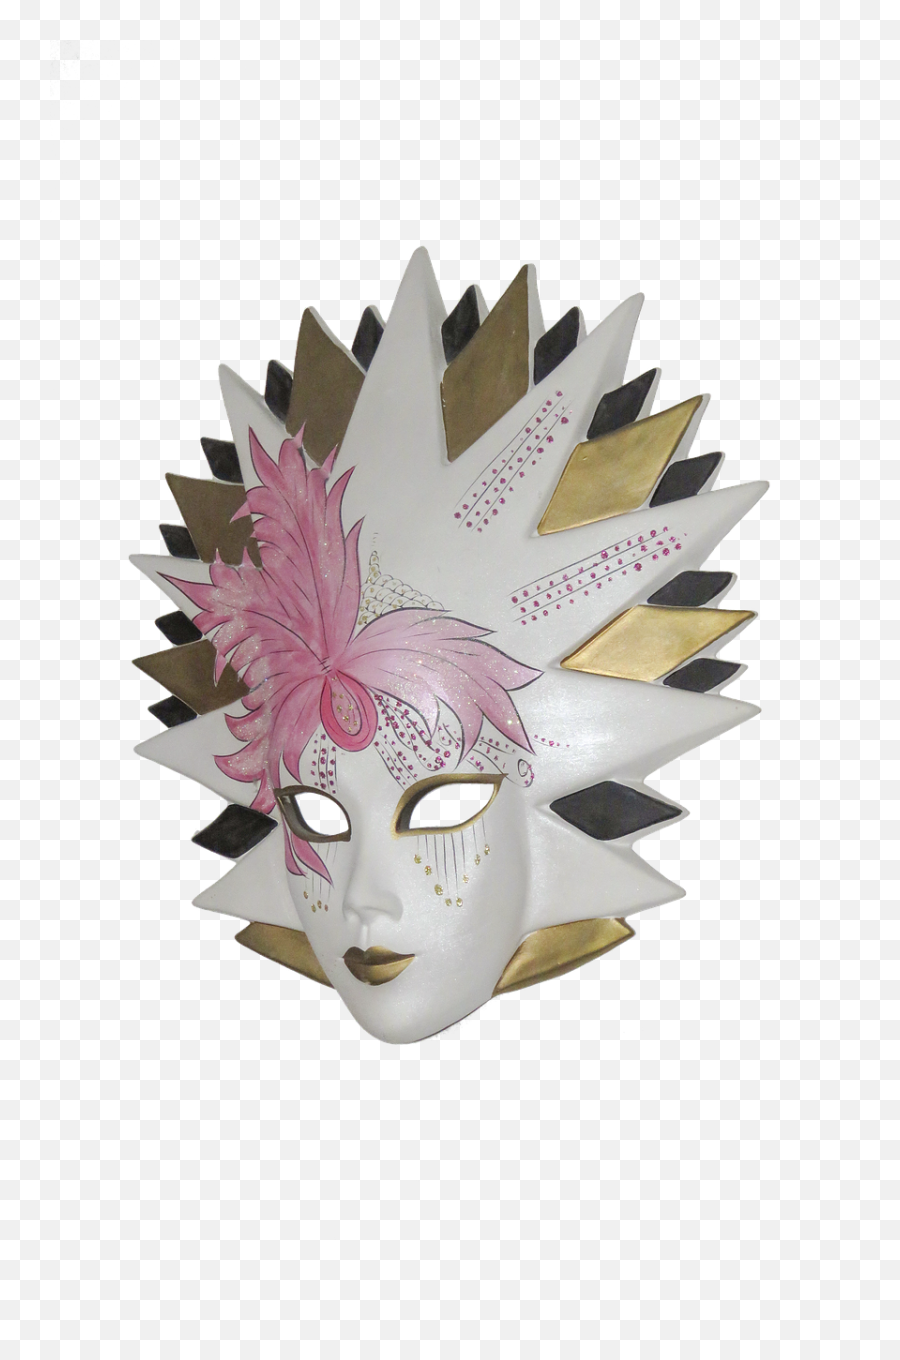 Download Mask Venetian Venetian Mask Carnival Masquerade - Benátske Masky Emoji,Masquerade Mask Transparent Background